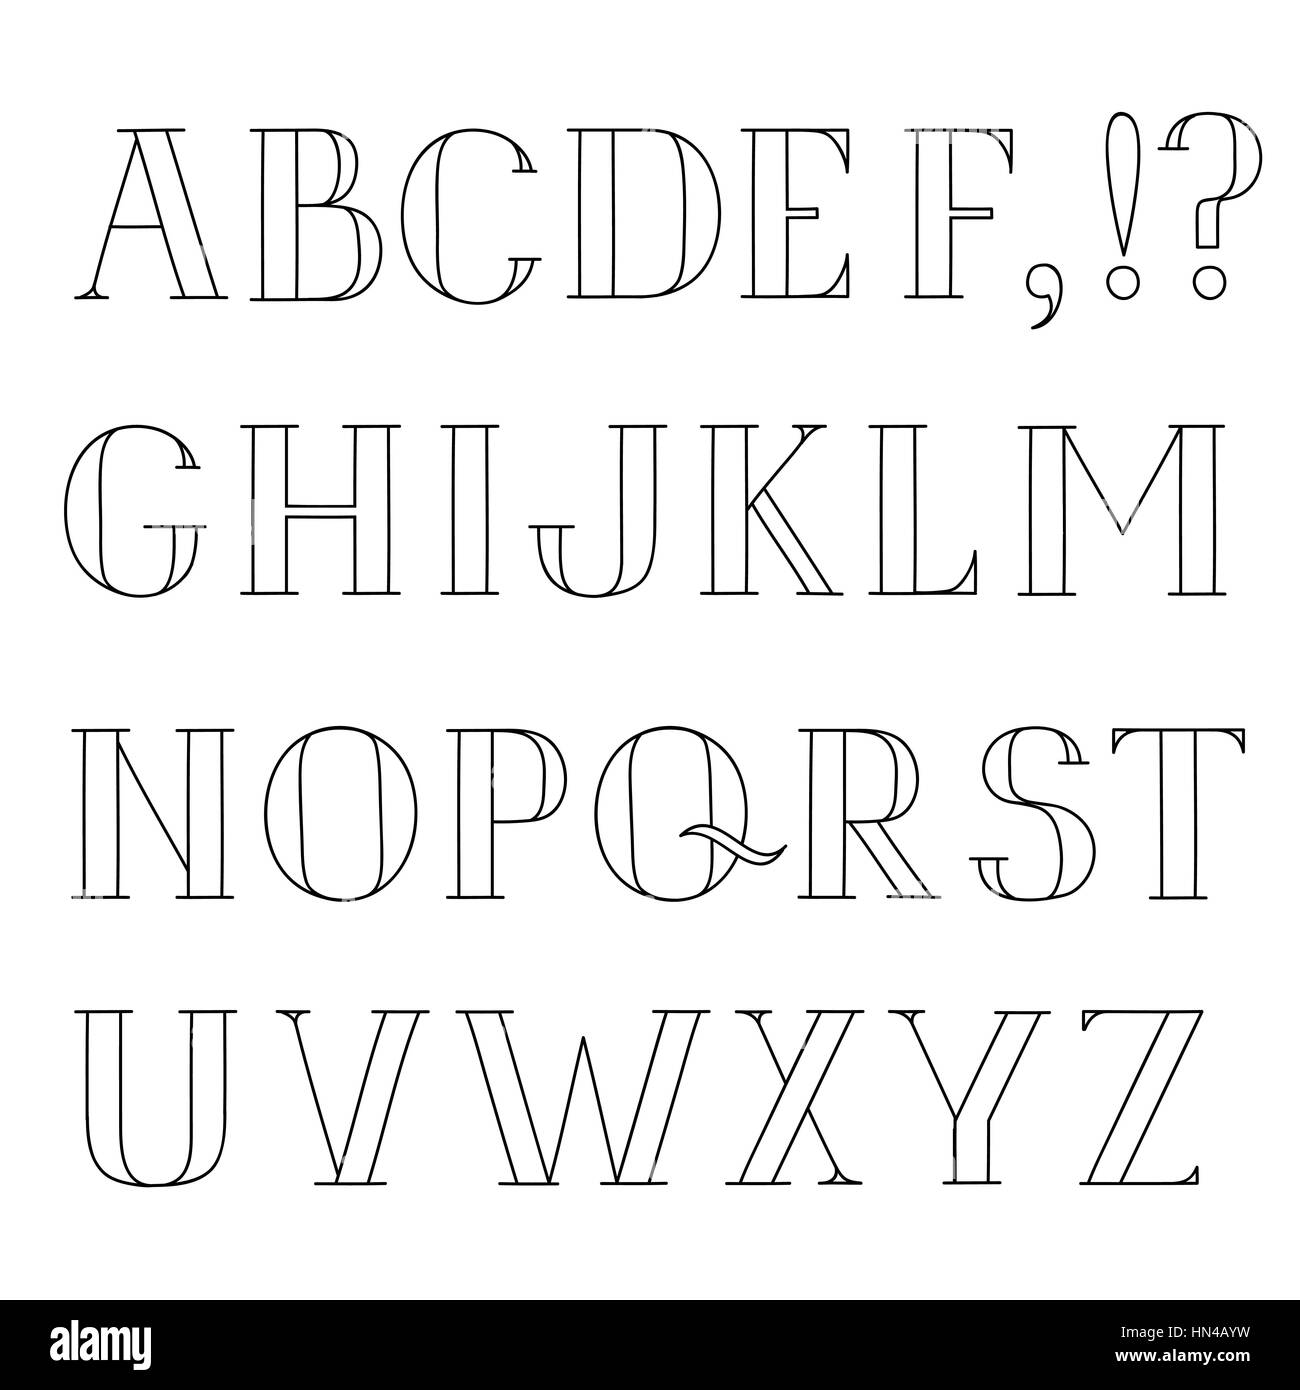 Lateinische Alphabet Grunge Line Dekorative Schriftart Hipster Skizziert Buchstaben Alphabet Einstellen Stock Vektorgrafik Alamy